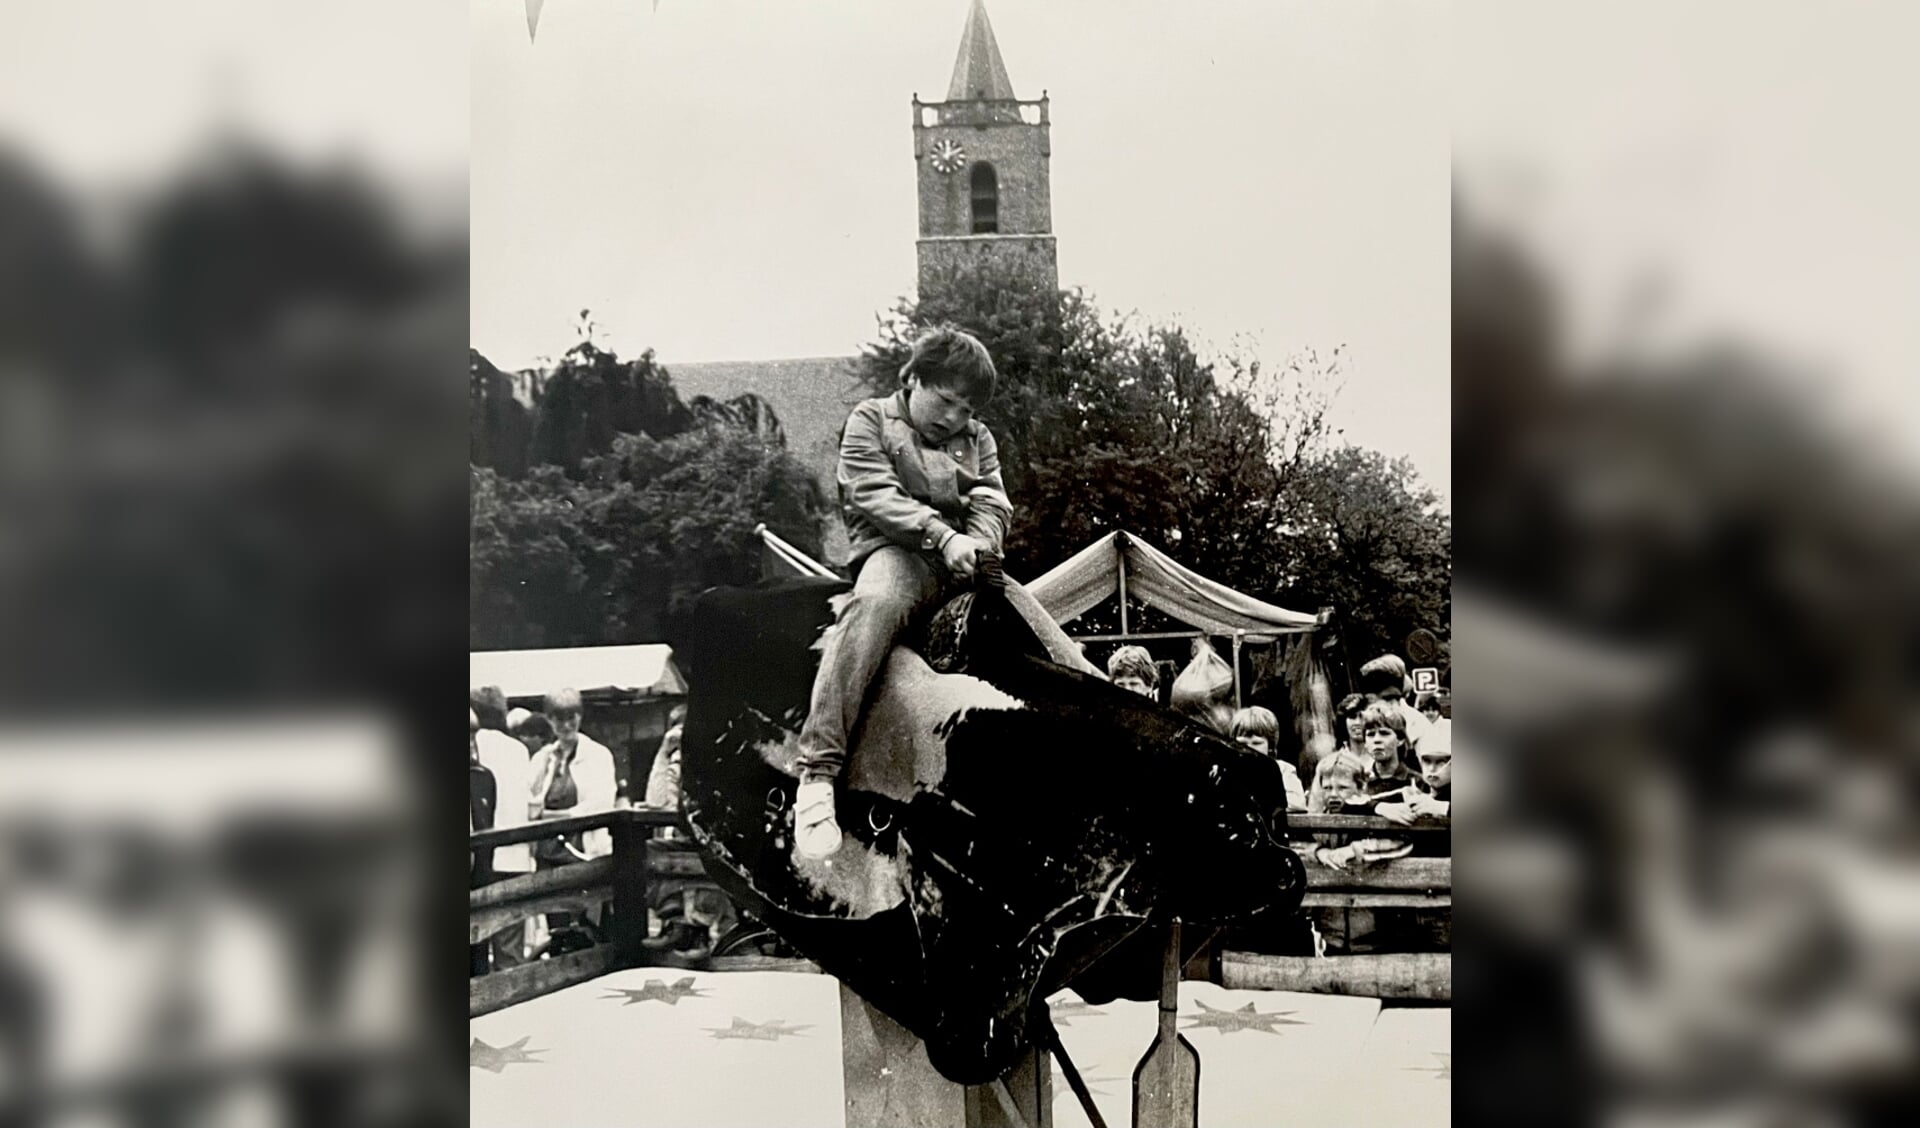 Richard Groenendijk als kind op de rodeostier, op de achtergrond de kerktoren van Dirksland met de klok links op de toren. Daar zit de klok ook vandaag de dag nog (Foto: privéarchief Richard Groenendijk).